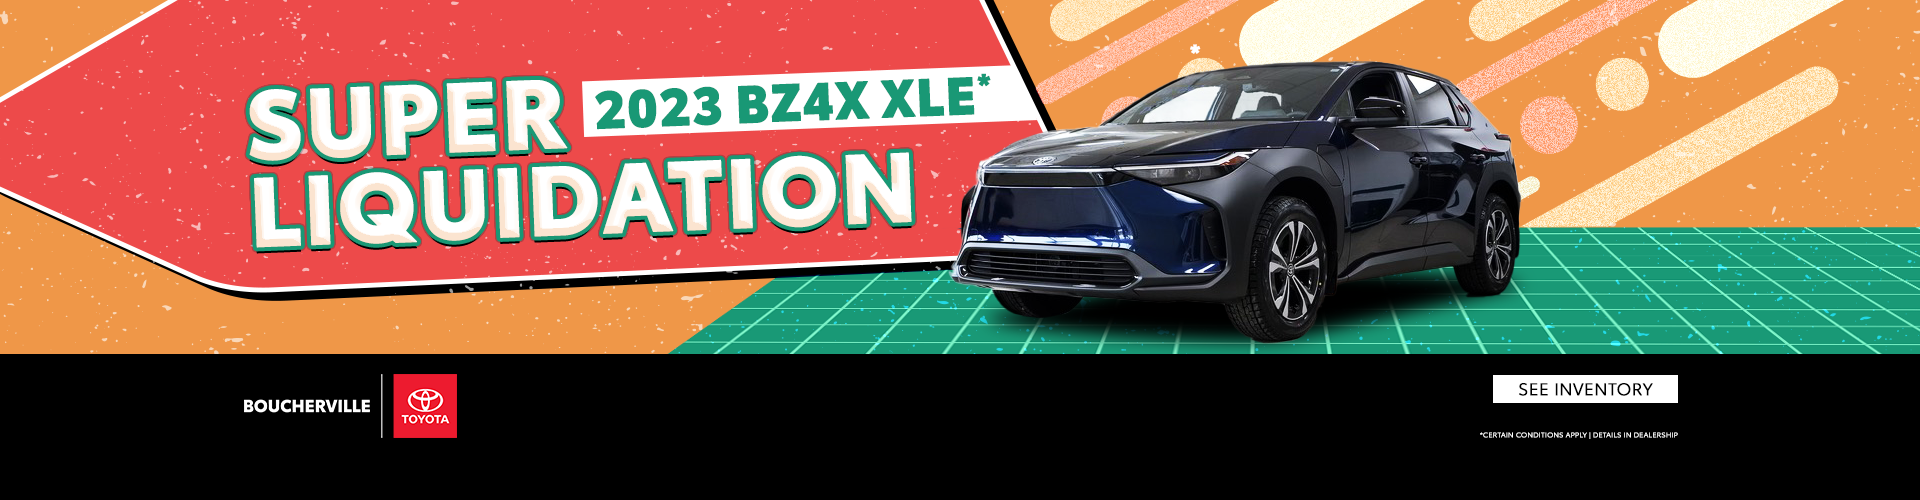 SUPER LIQUIDATION 2023 BZ4X XLE !